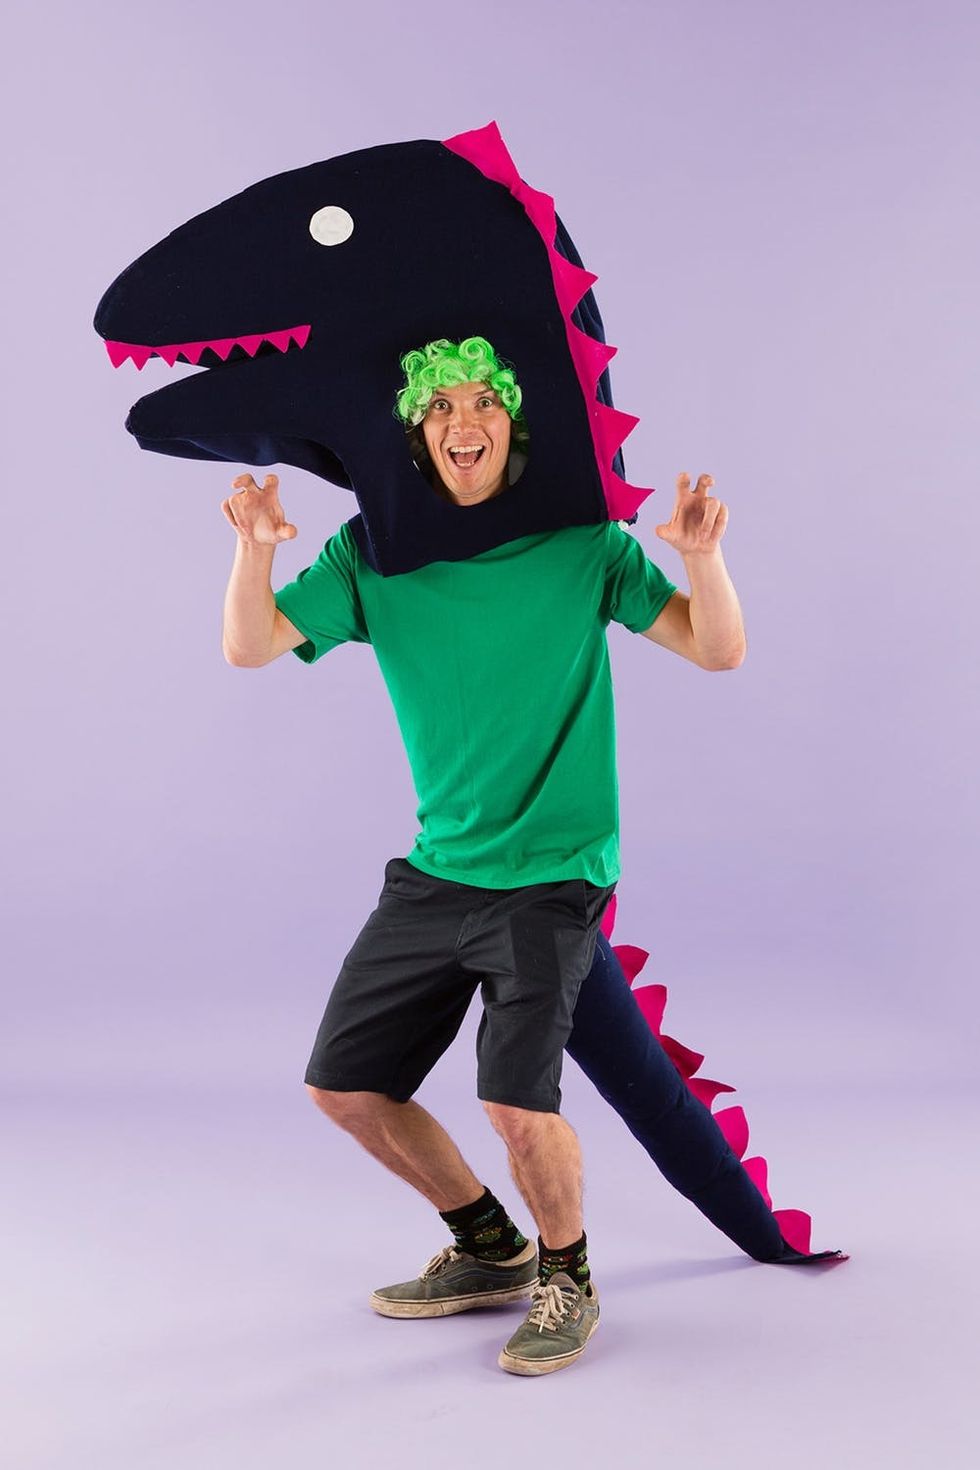 T-Rex costume